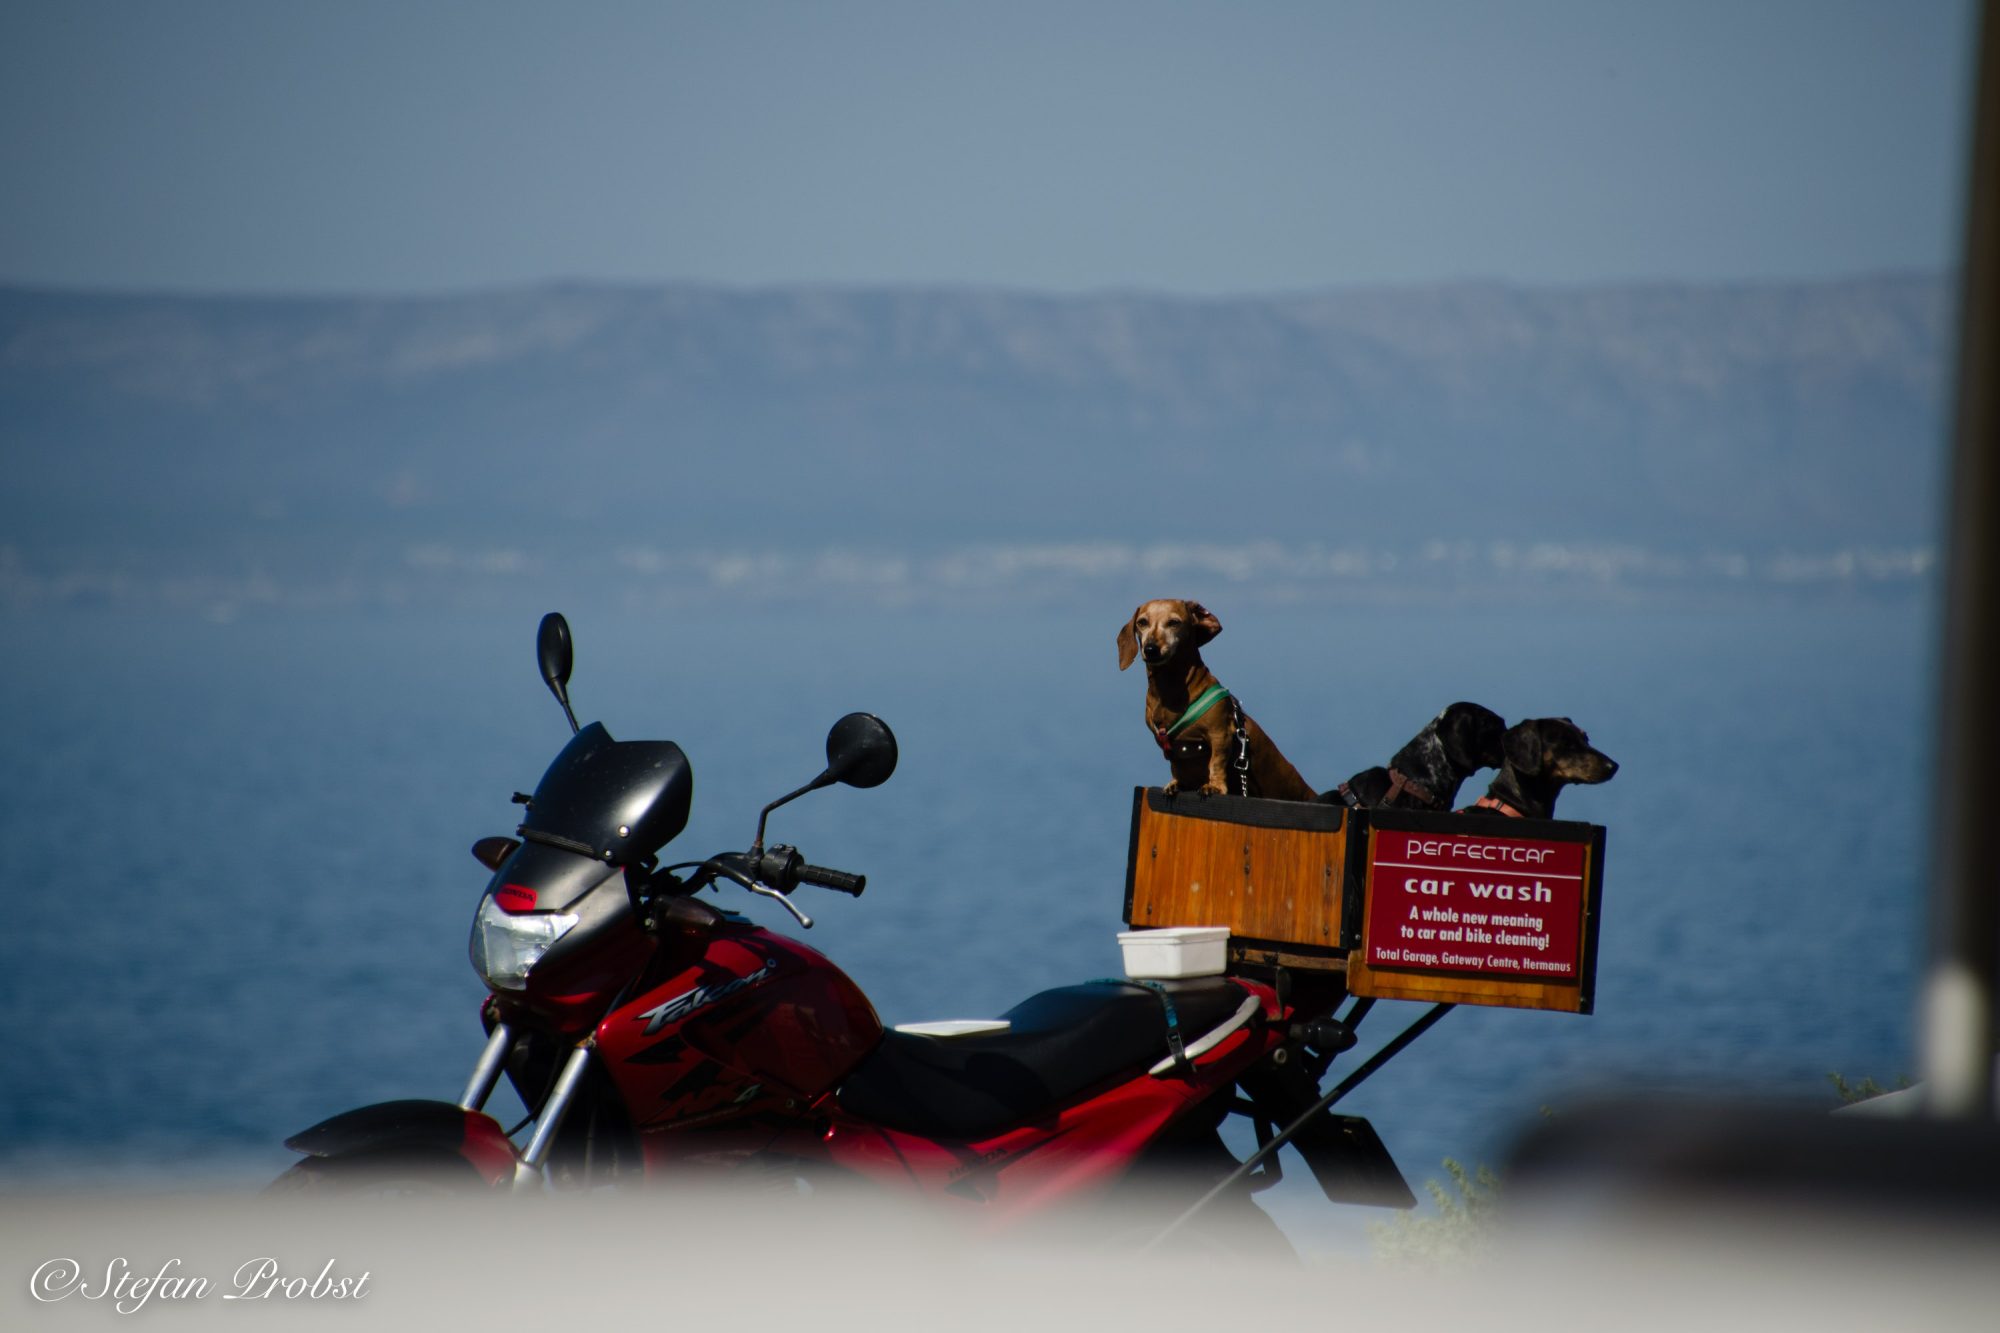 Südafrikas Gardenroute - Drei Hunde in auf einem Motorrad mir Werbung für Autowäschen